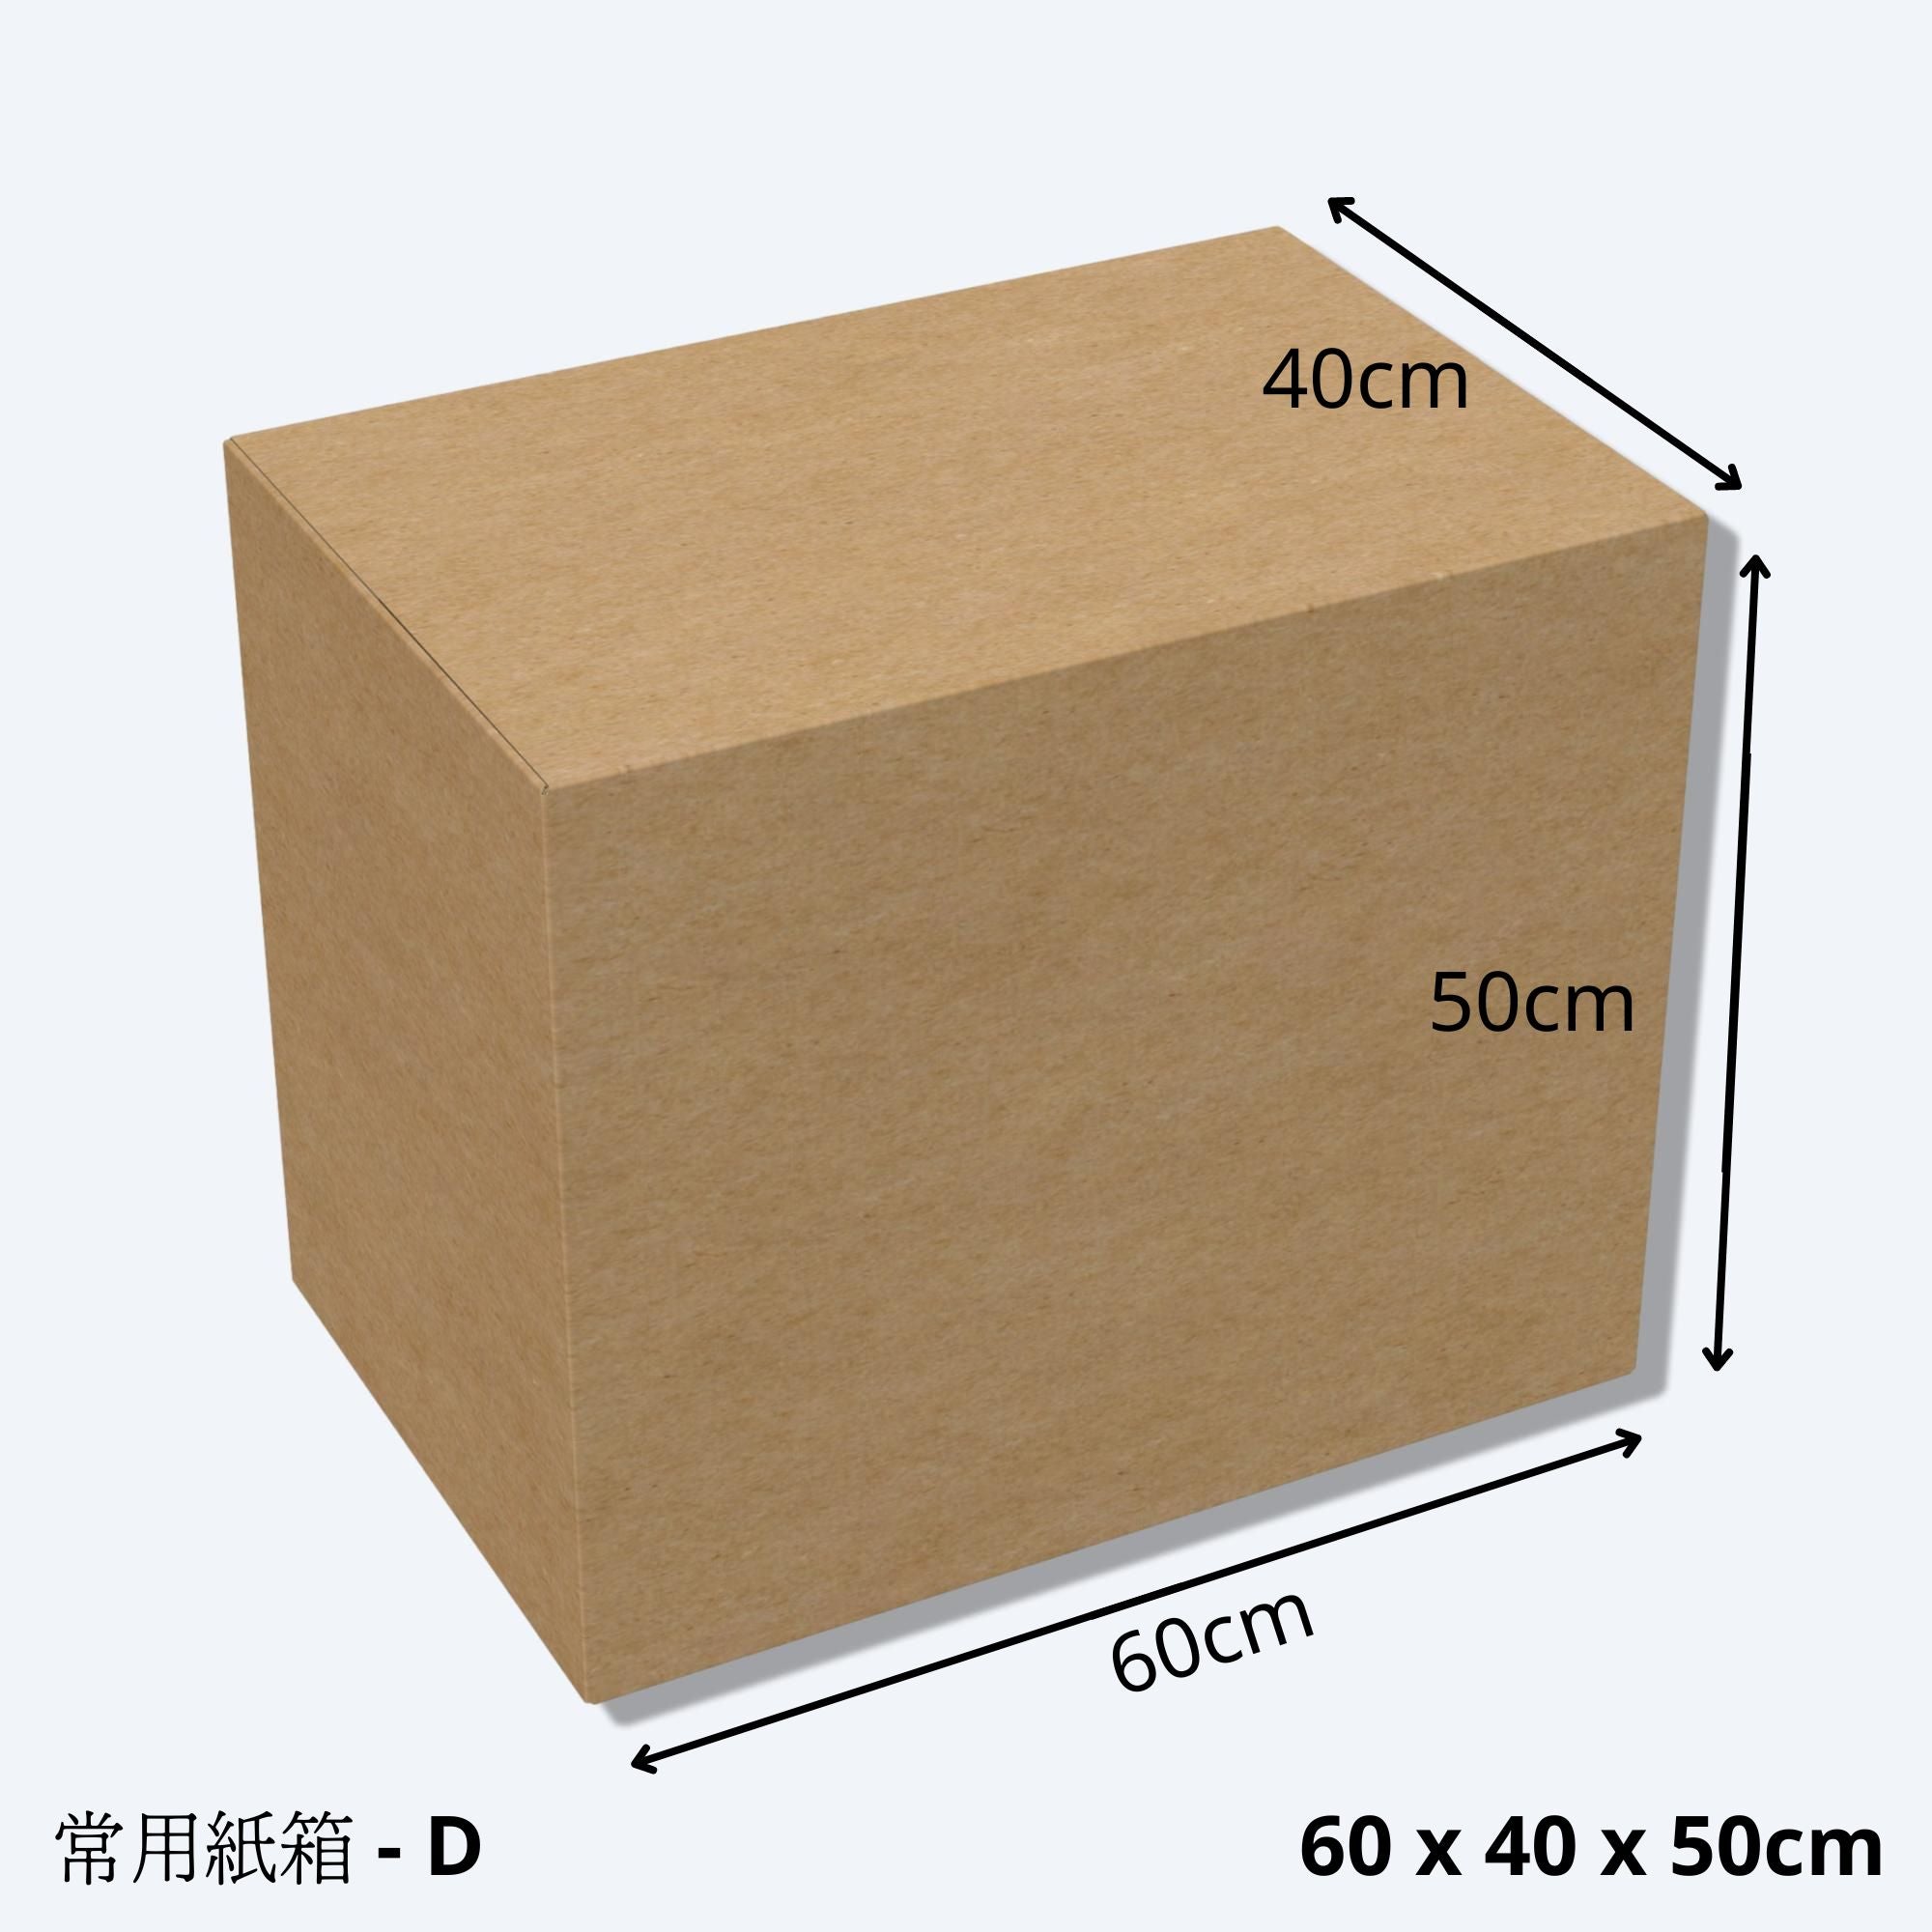 搬屋紙皮箱(尺寸D - 60 x 40 X 50cm)的尺寸示意圖。搬屋紙皮箱D堅固耐用，專為搬屋而設計，適用於電子商務、移民、物流、倉儲、運輸、包裝及搬屋收納。